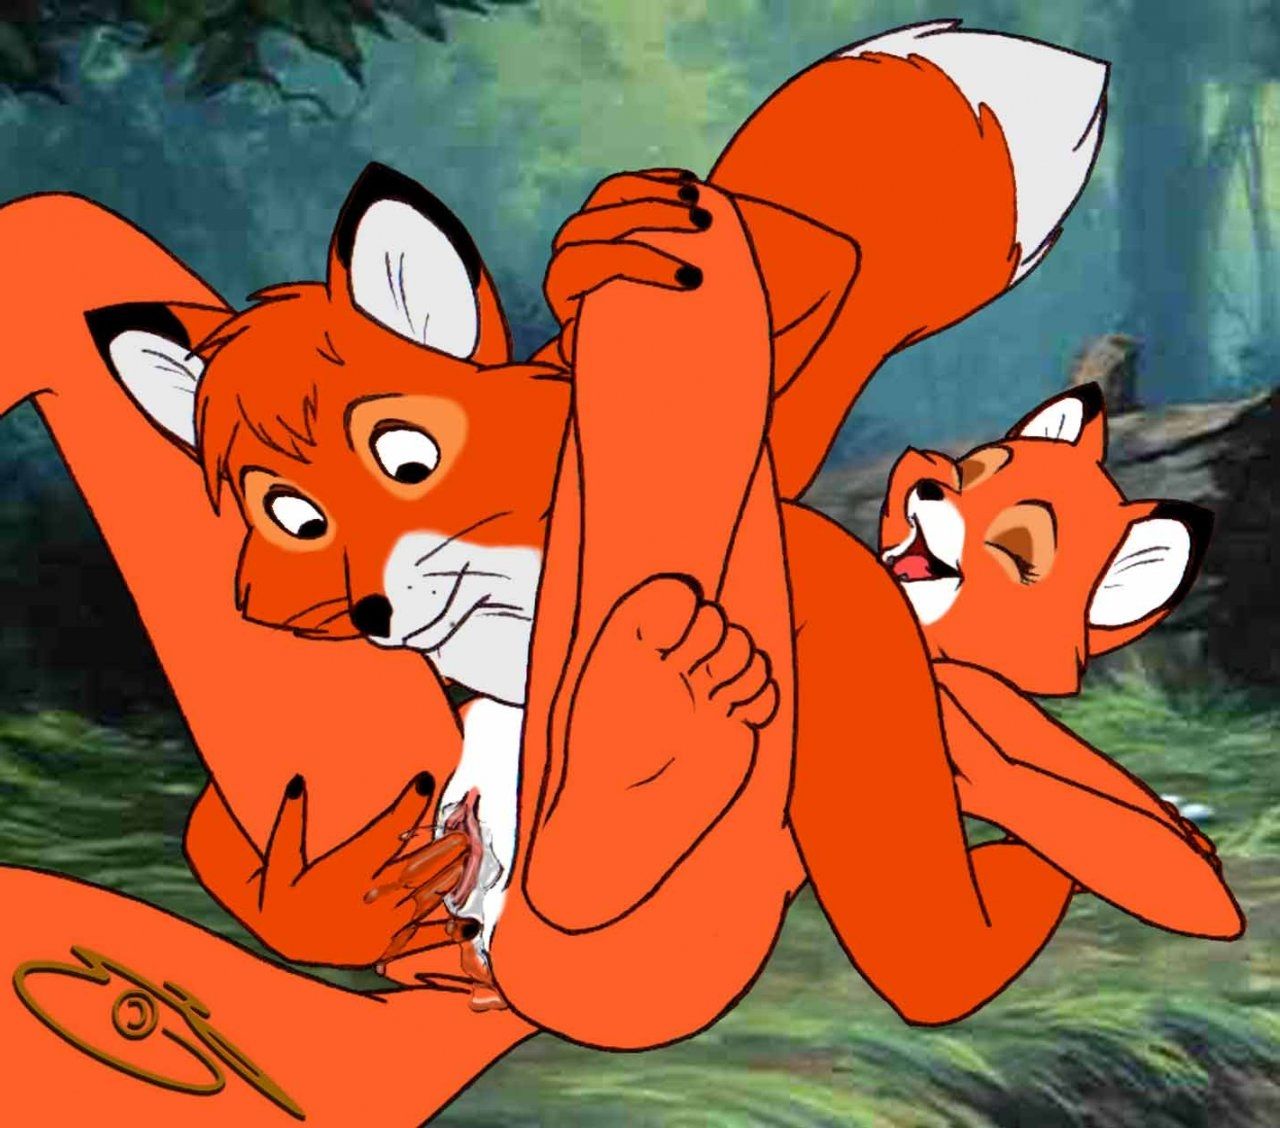 Turk reccomend animated fox